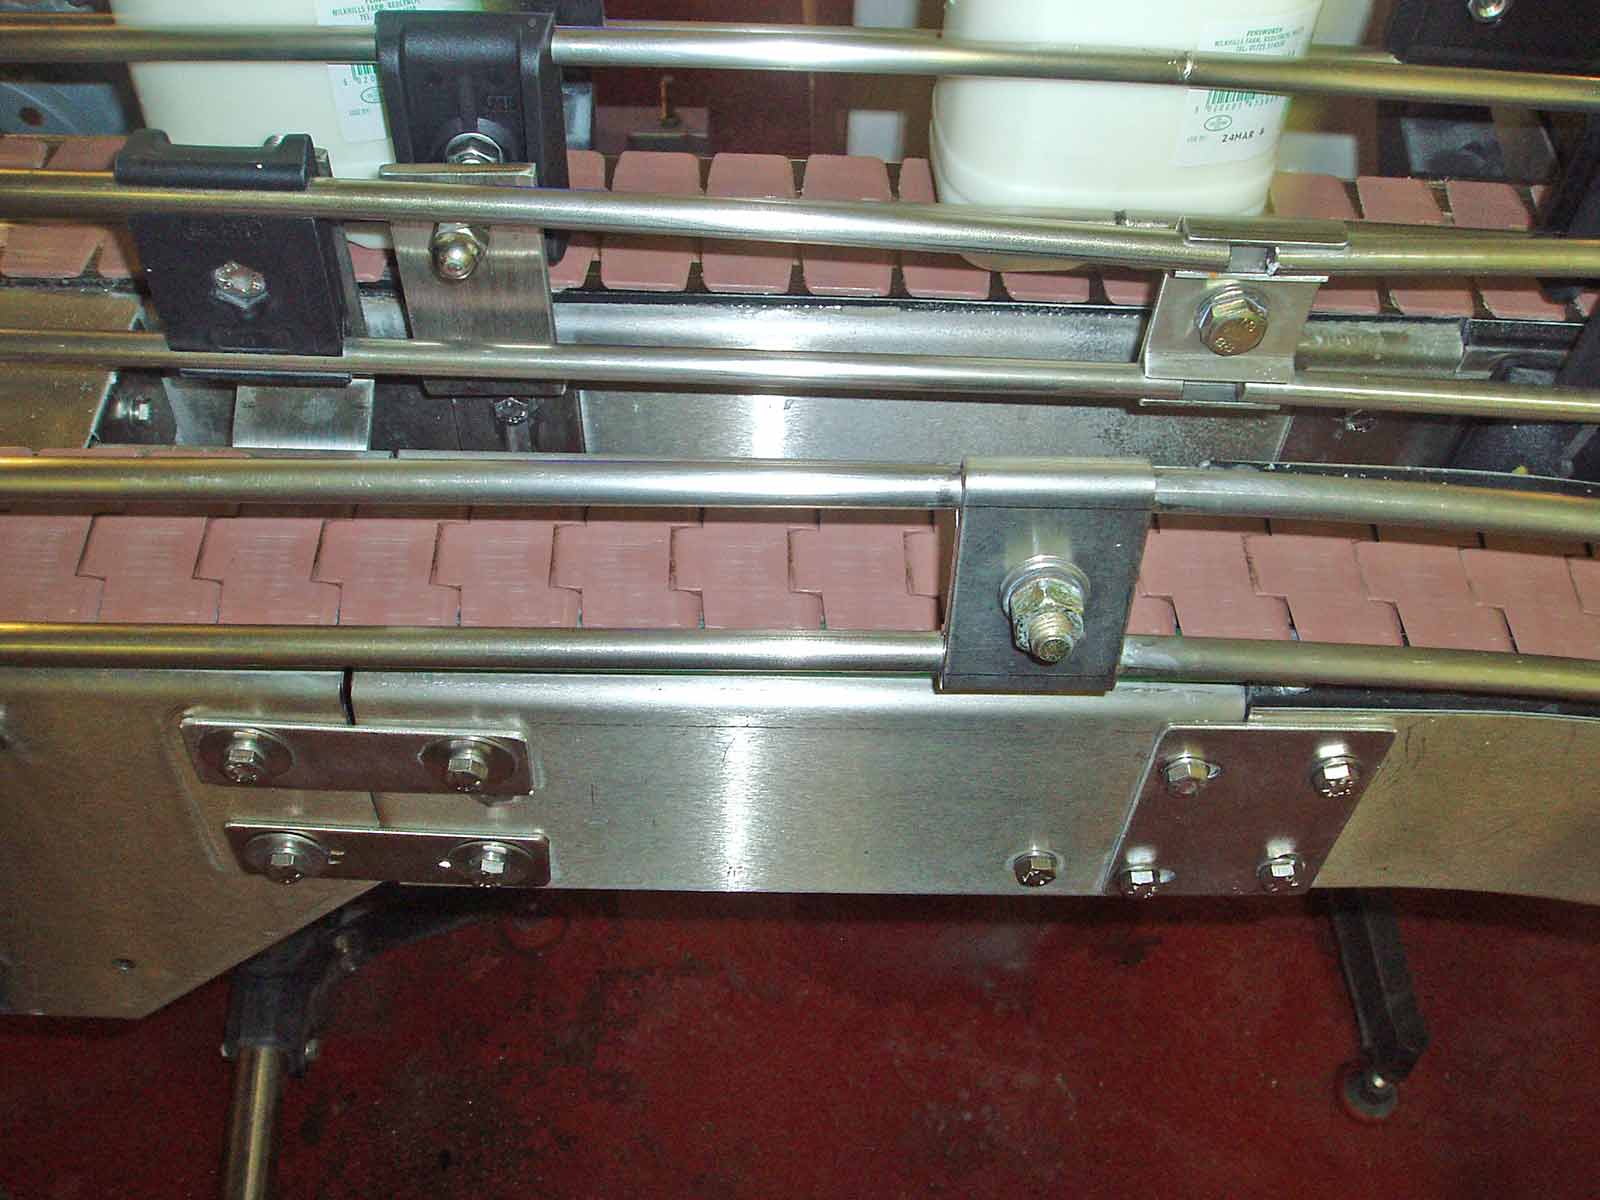 Slatband Conveyor